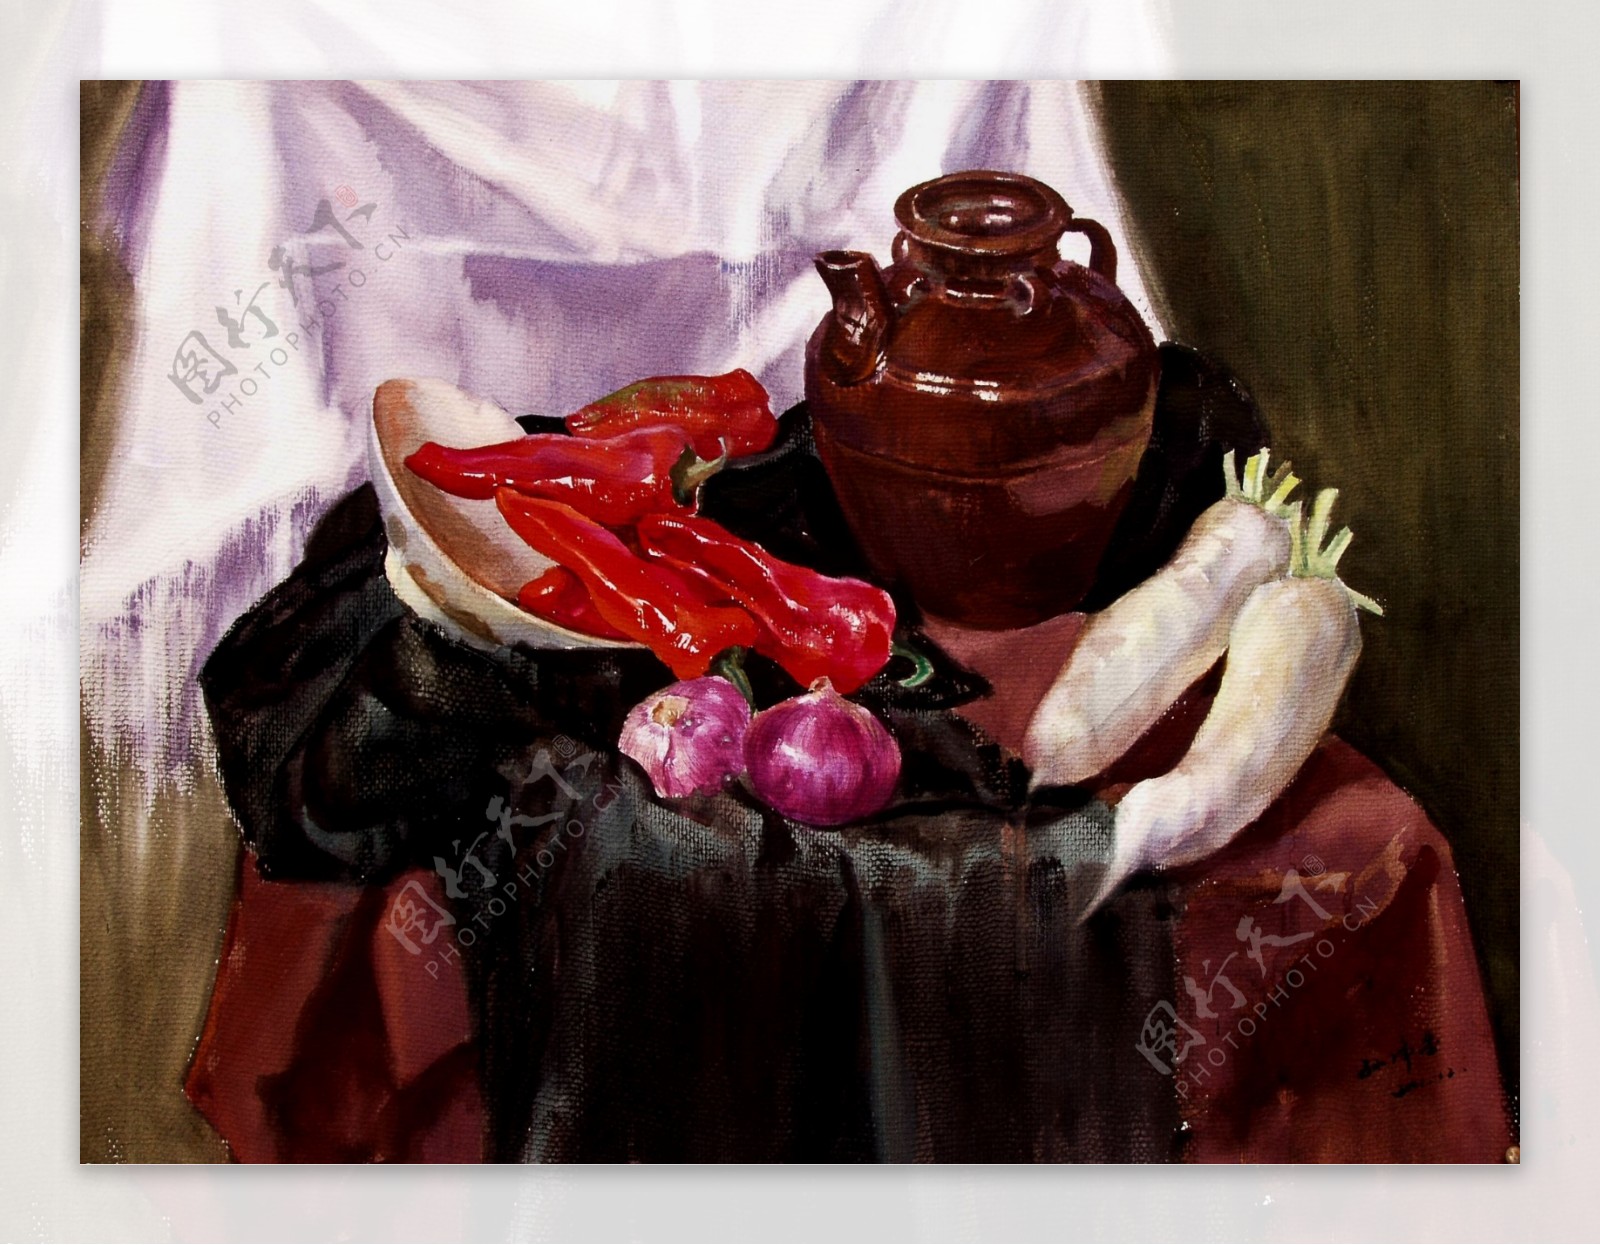 sjf姘村僵闈欑墿2001花卉水果蔬菜器皿静物印象画派写实主义油画装饰画